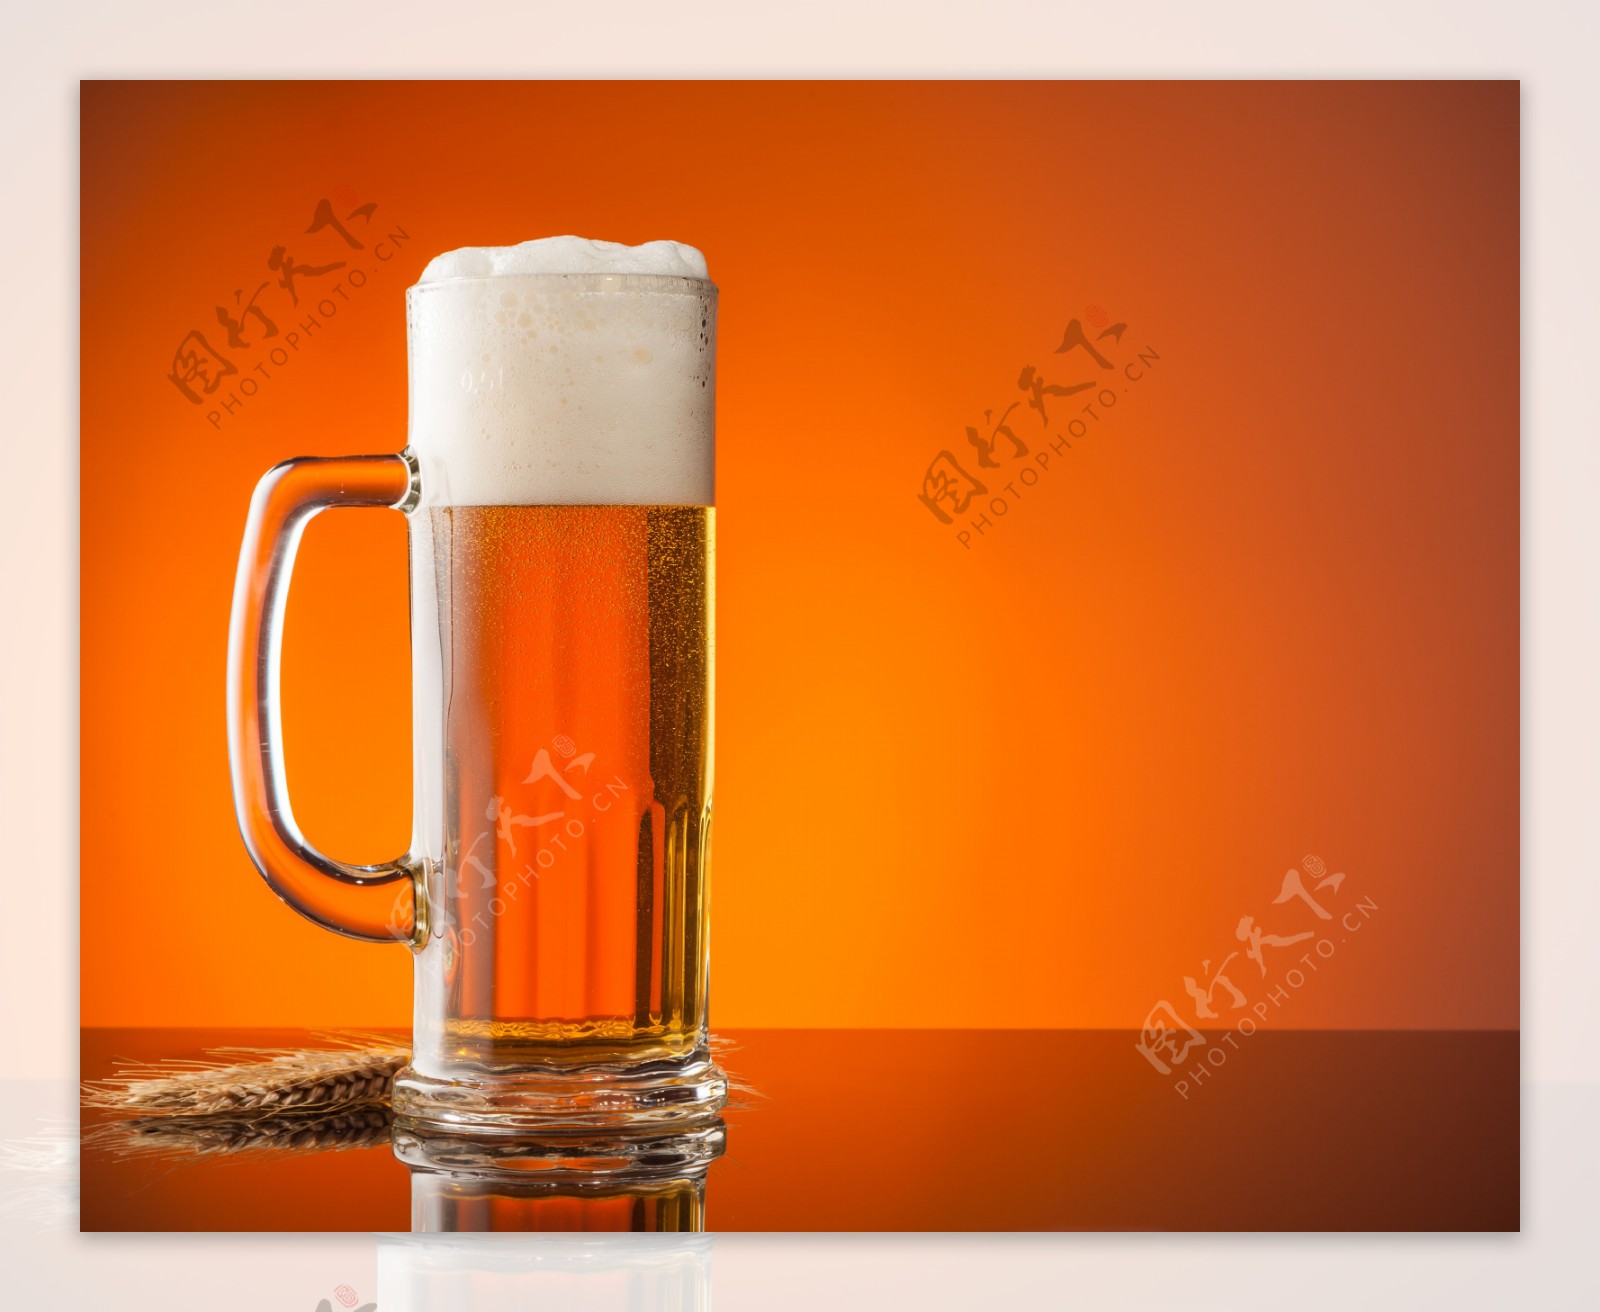 长型啤酒杯图片